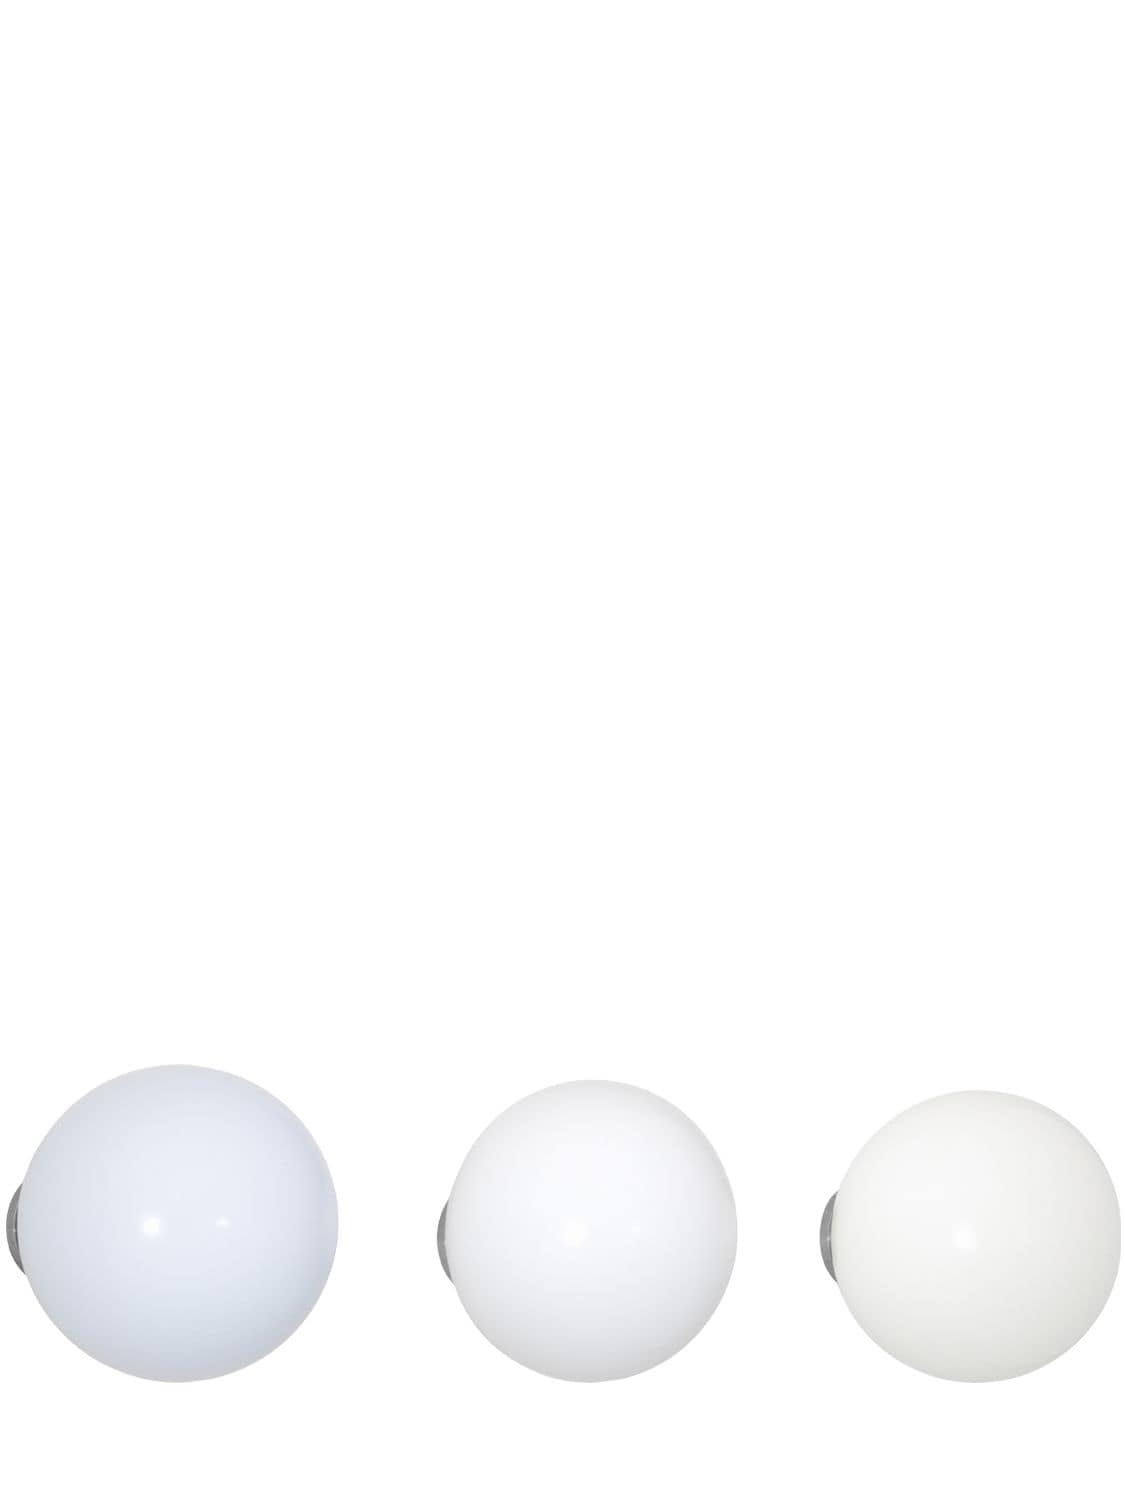 Image of Set Of 3 White Coat Dots